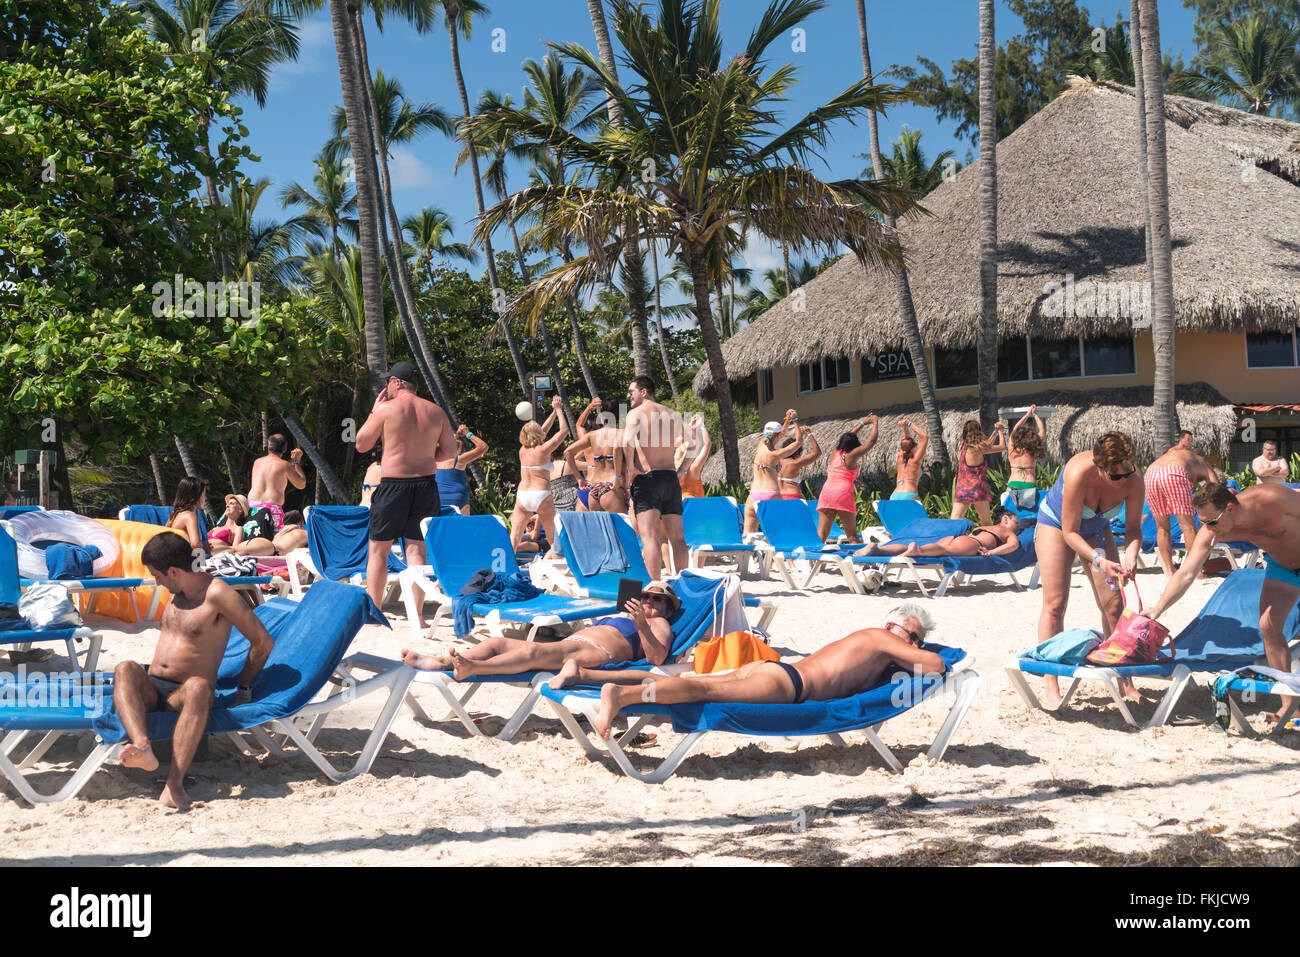 El turismo de masas en la playa de Playa Bavaro, Punta Cana, República Dominicana, El Caribe, América, Foto de stock